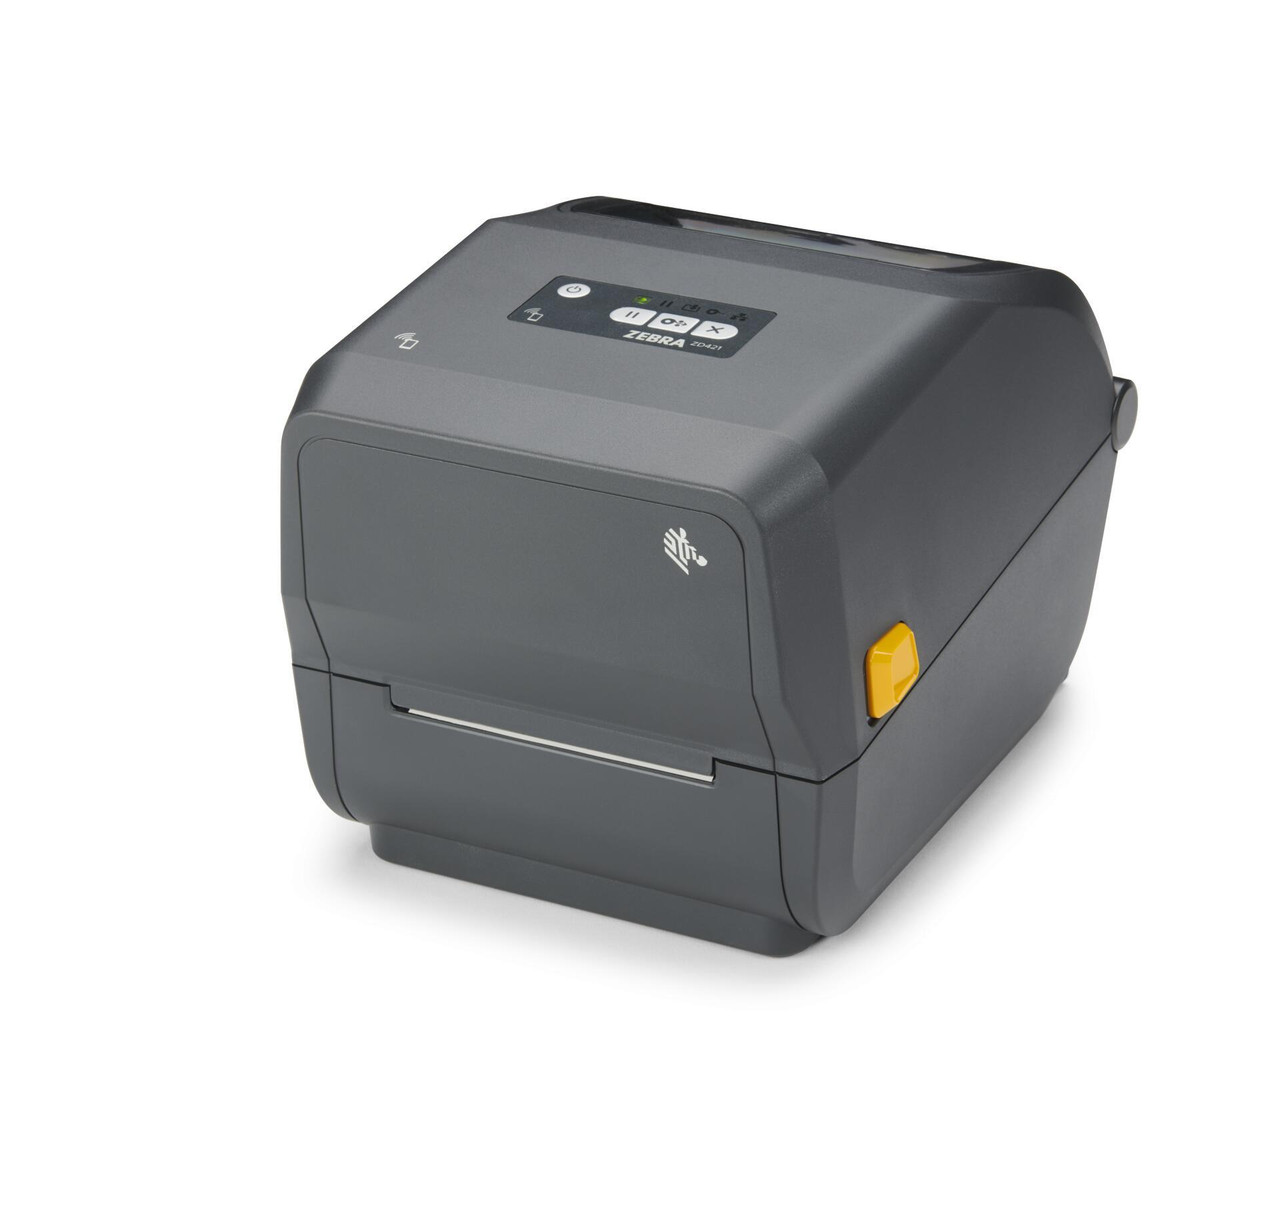 Buy LX3000 Color Label Printer Online